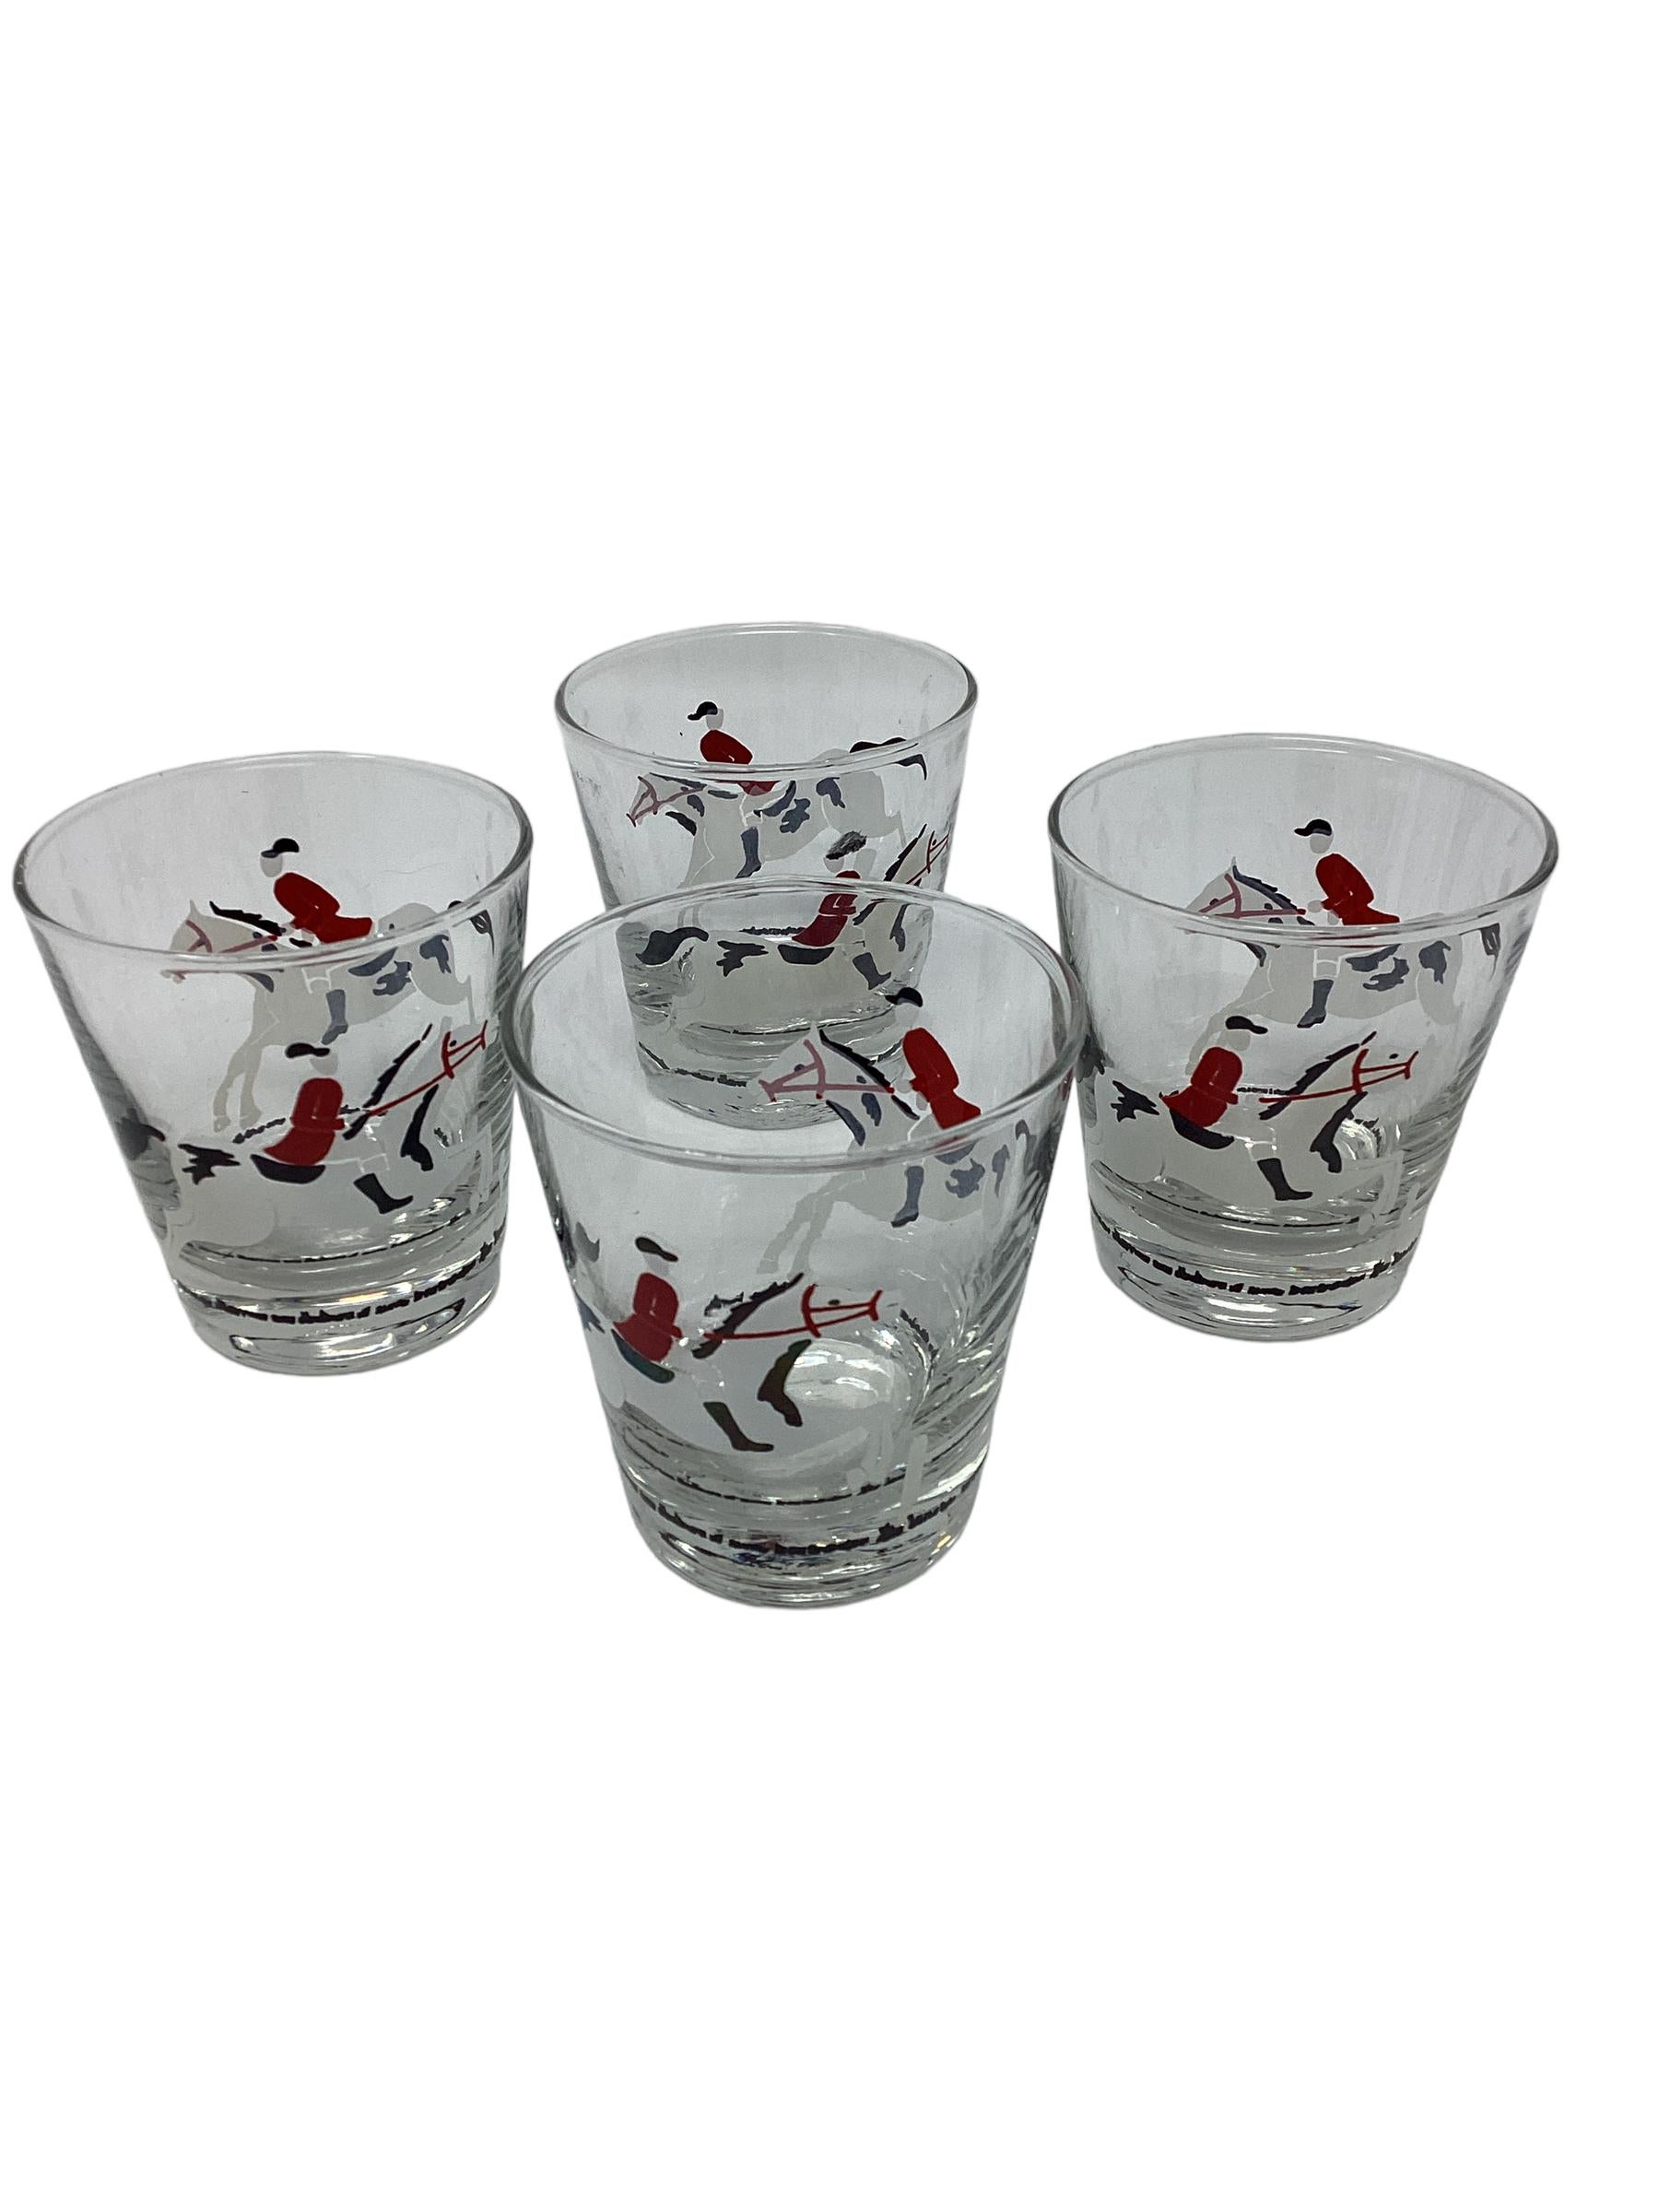 Satz von 4 Vintage Libbey Equestrian Old Fashioned Gläsern. Jedes Glas ist mit zwei rot-weiß gekleideten Reitern in der Mitte des Sprungs verziert. Es sind zwei Vierer-Sets erhältlich.